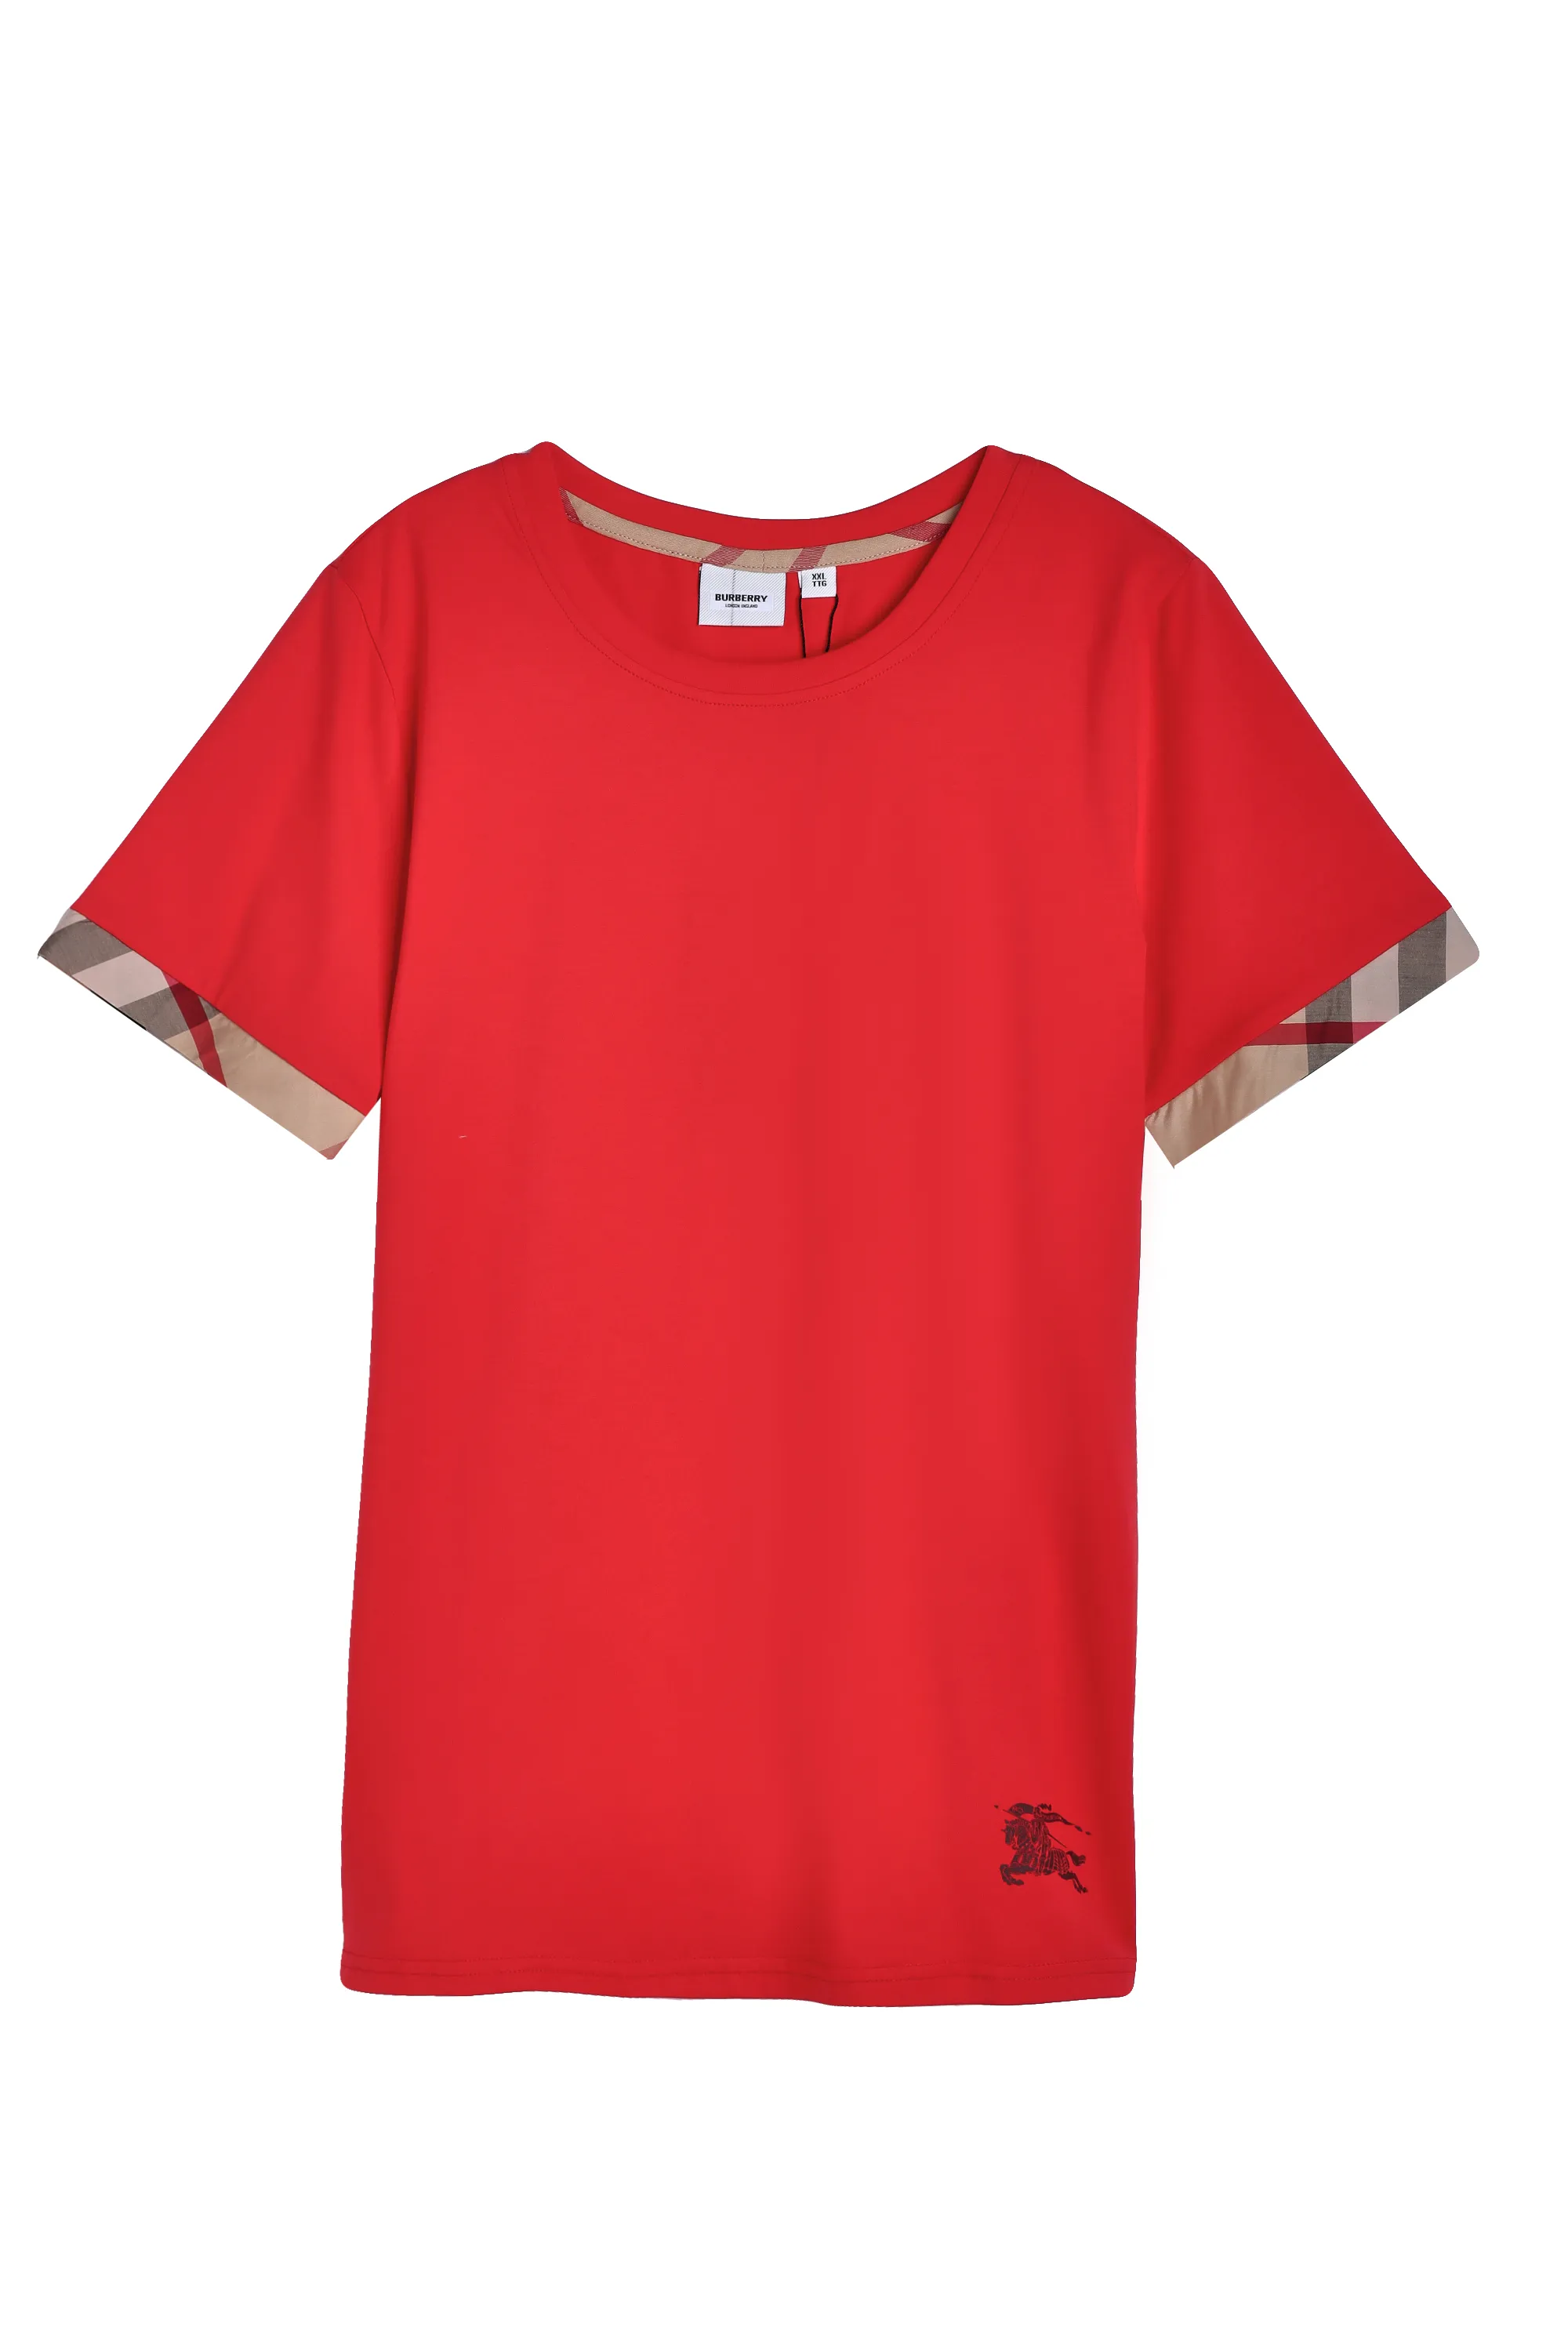 Classic T-shirt Designer Femmes européennes et American Popular Cotton tissu imprime les t-shirts confortables